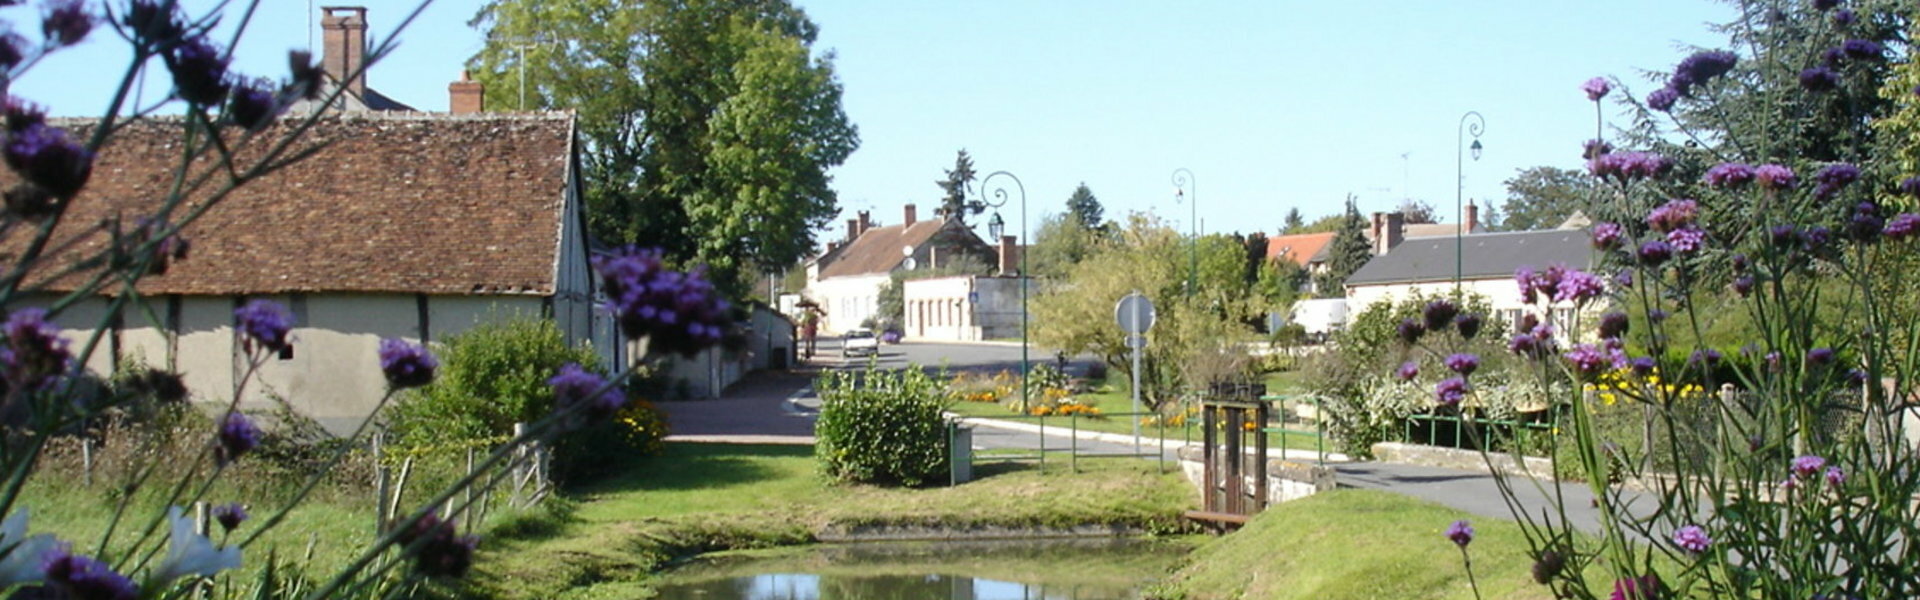 Bassin d'Apprentissage Fixe de Saint-Maurice-sur-Aveyron